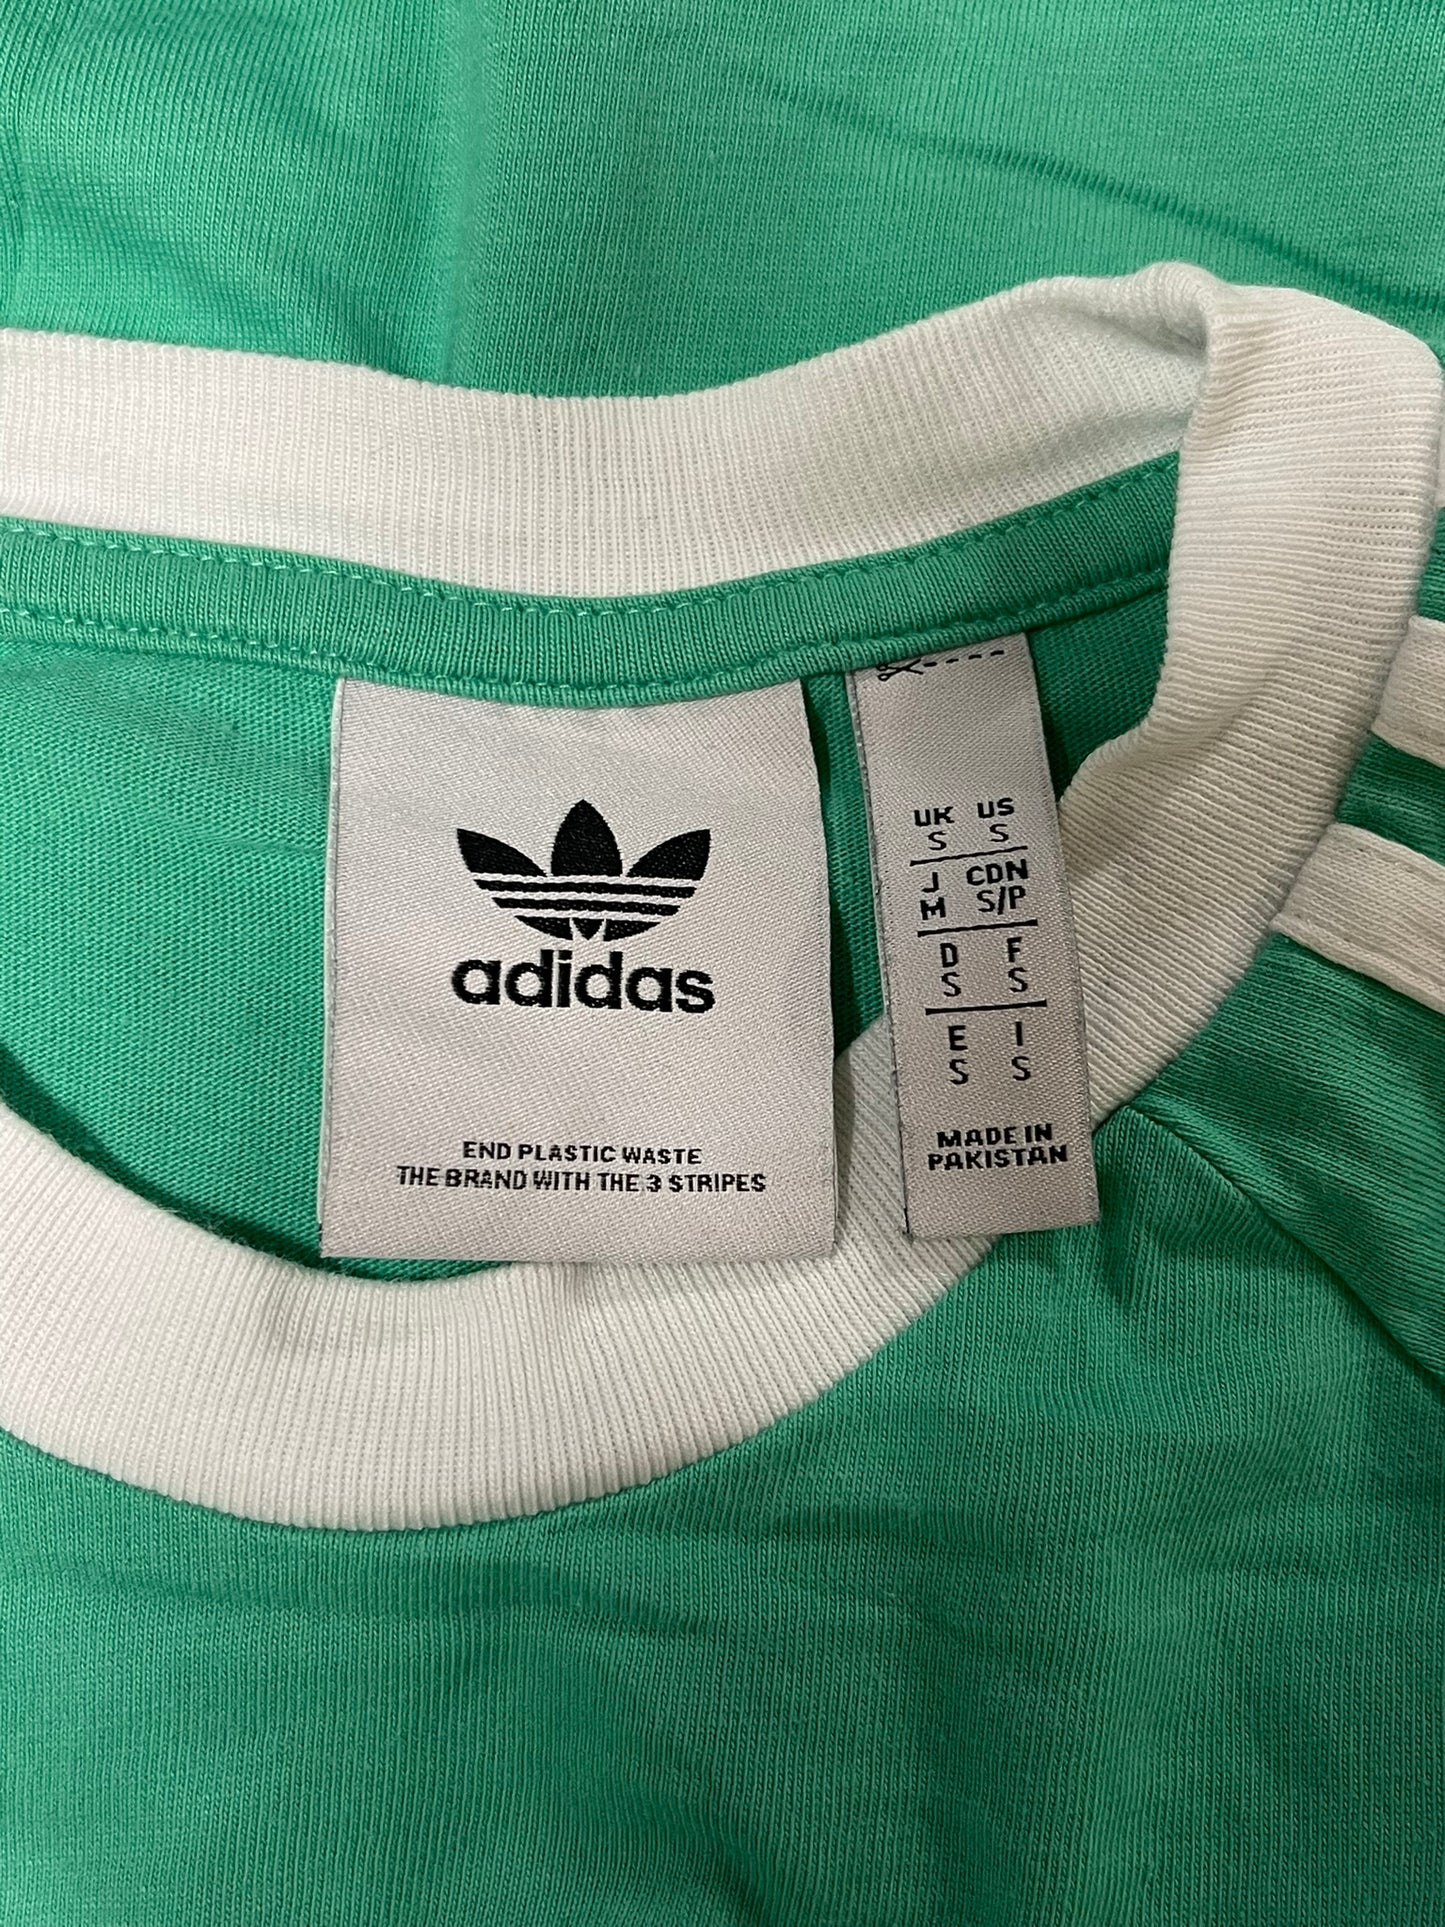 Adidas Green Top Small